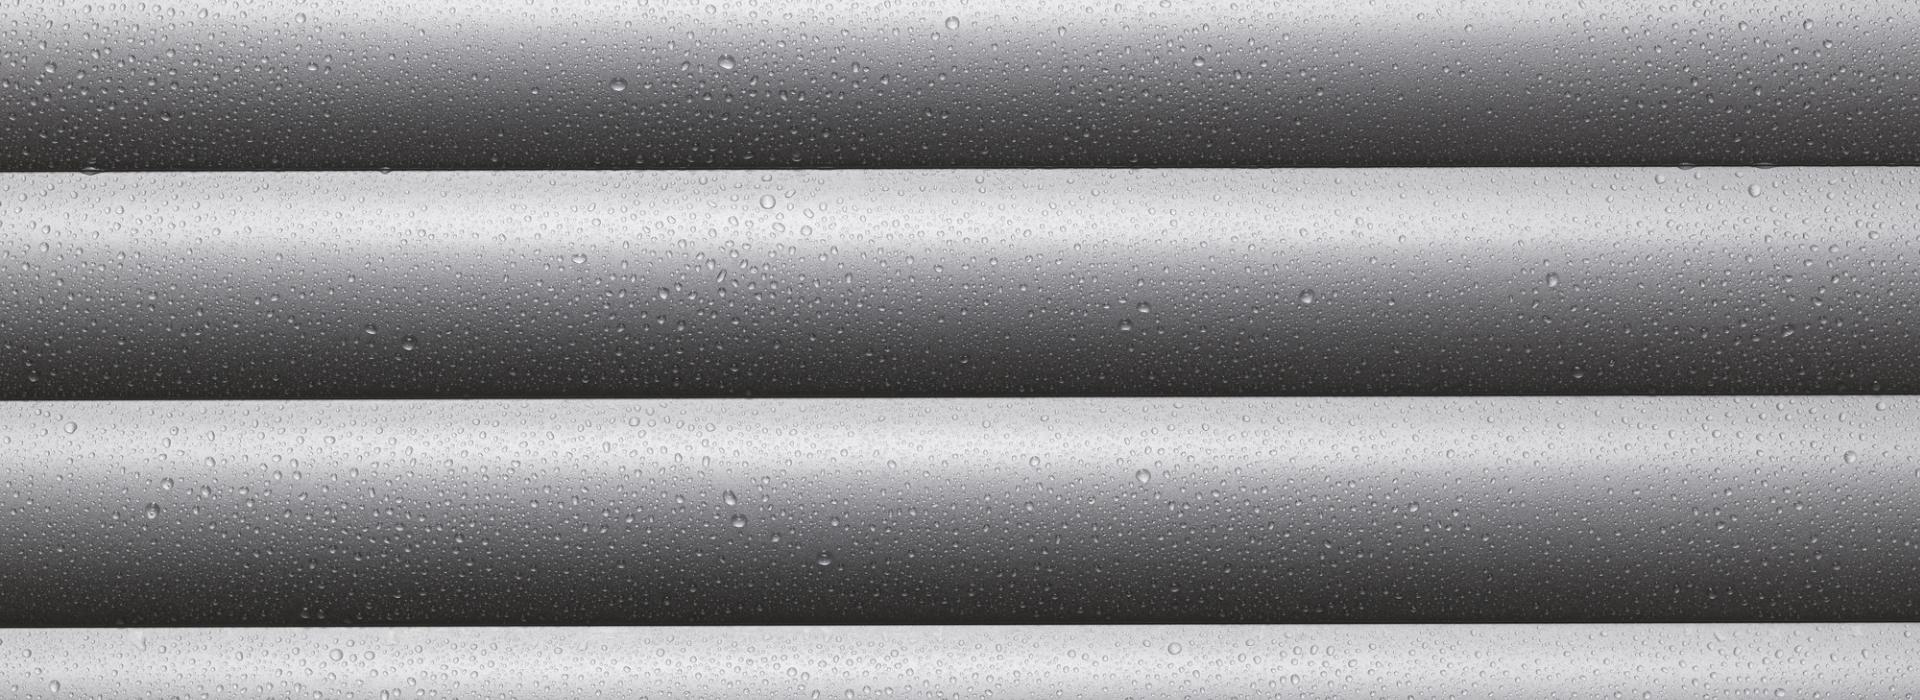 Rollladenprofil Detailansicht mit Wassertropfen